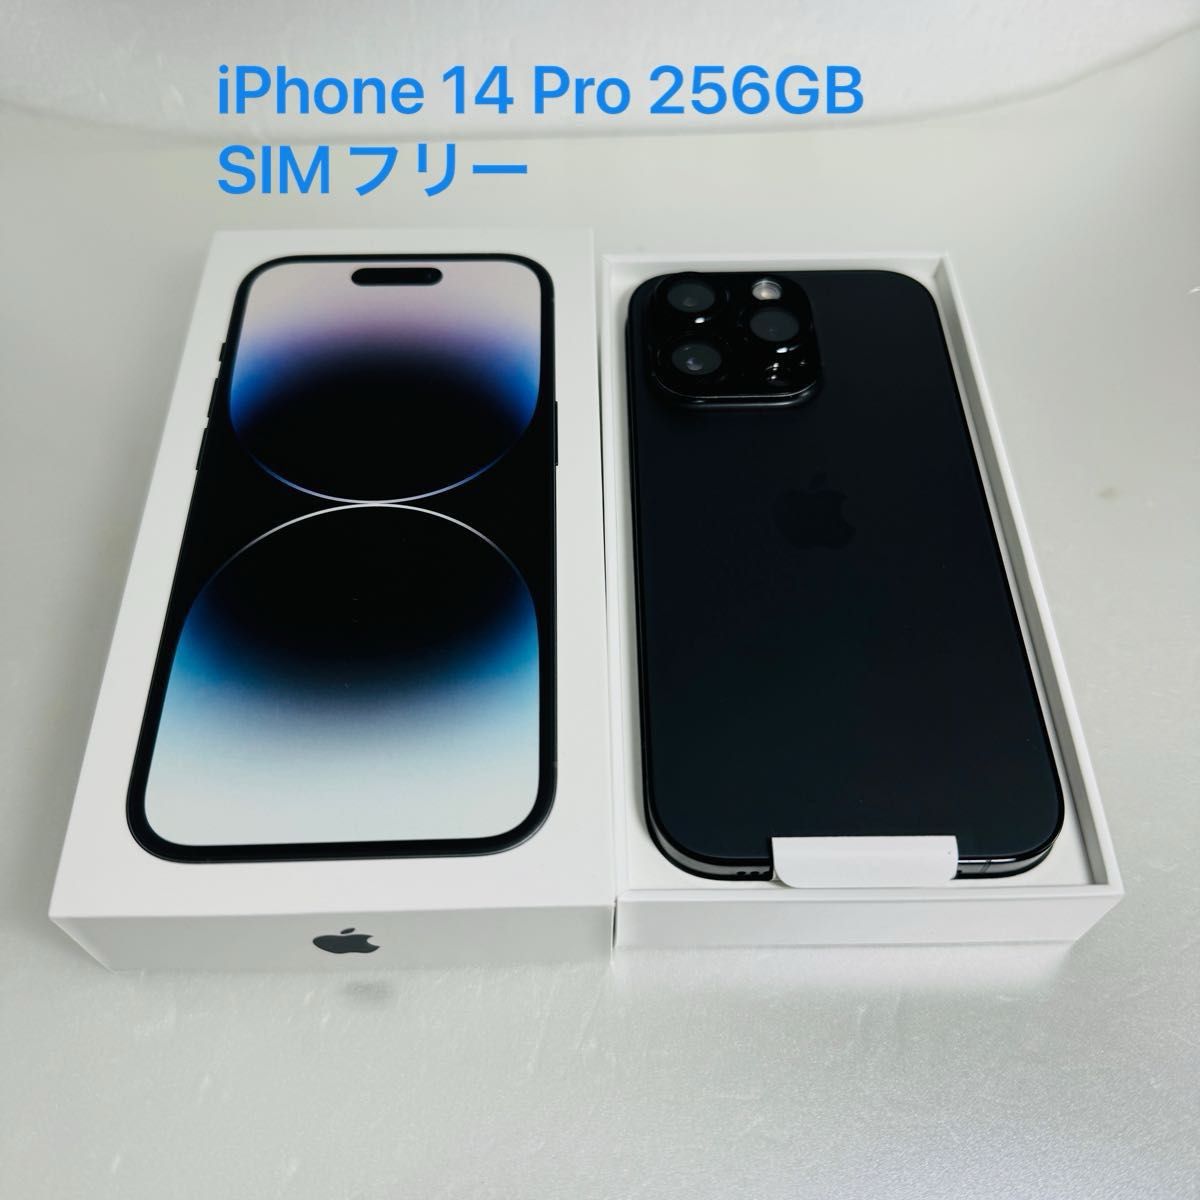 美品】iPhone 14 Pro スペースブラック256GB SIMフリー アイフォン14